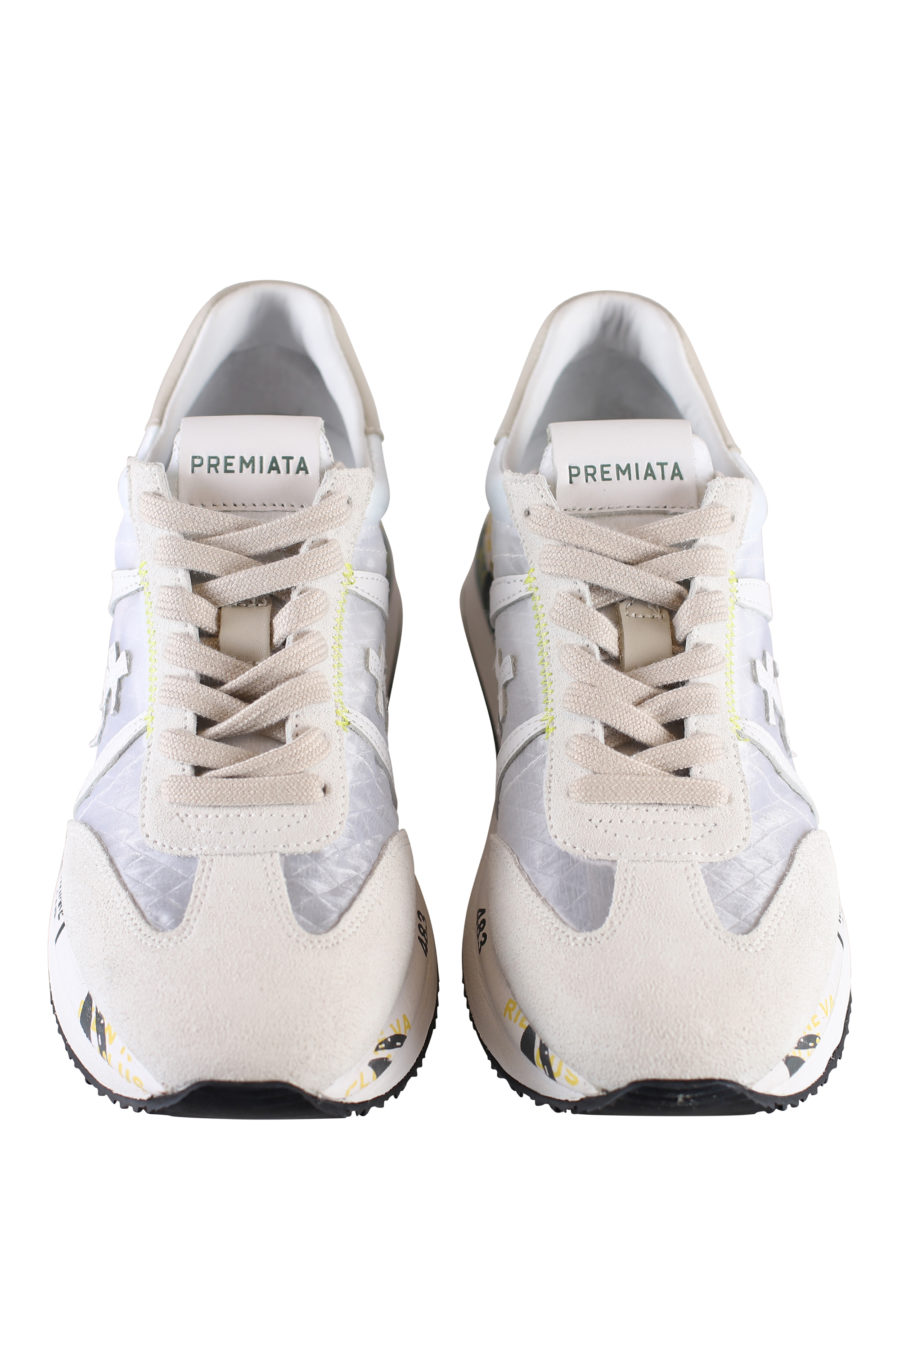 Zapatillas blancas y grises con detalles en tejido transpirable - IMG 1845